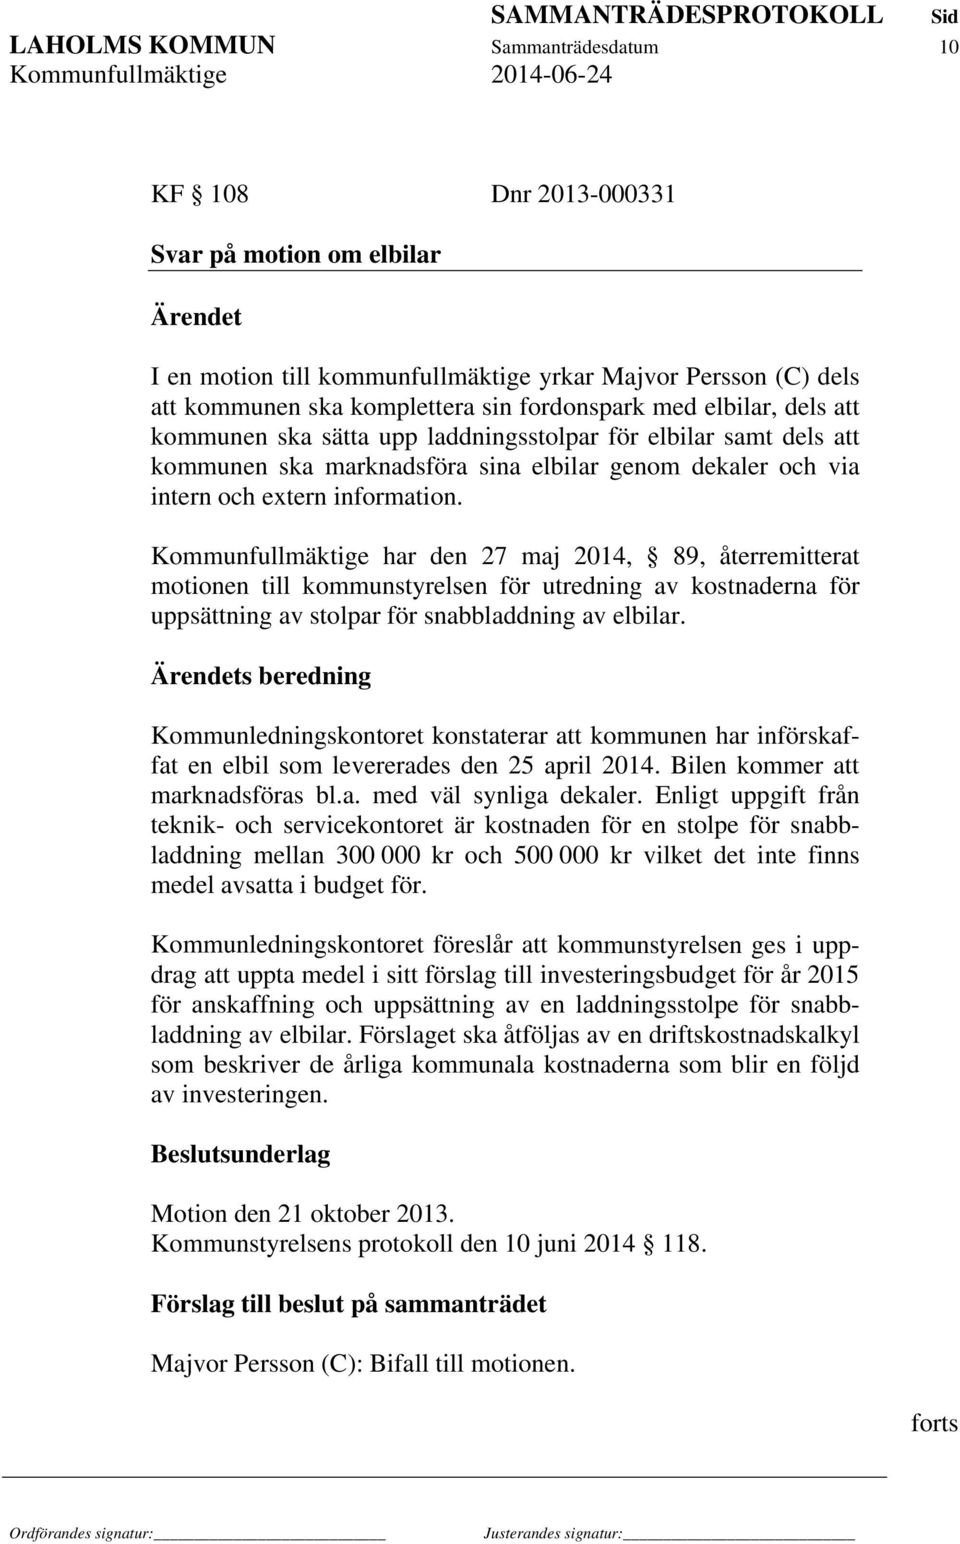 Kommunfullmäktige har den 27 maj 2014, 89, återremitterat motionen till kommunstyrelsen för utredning av kostnaderna för uppsättning av stolpar för snabbladdning av elbilar.